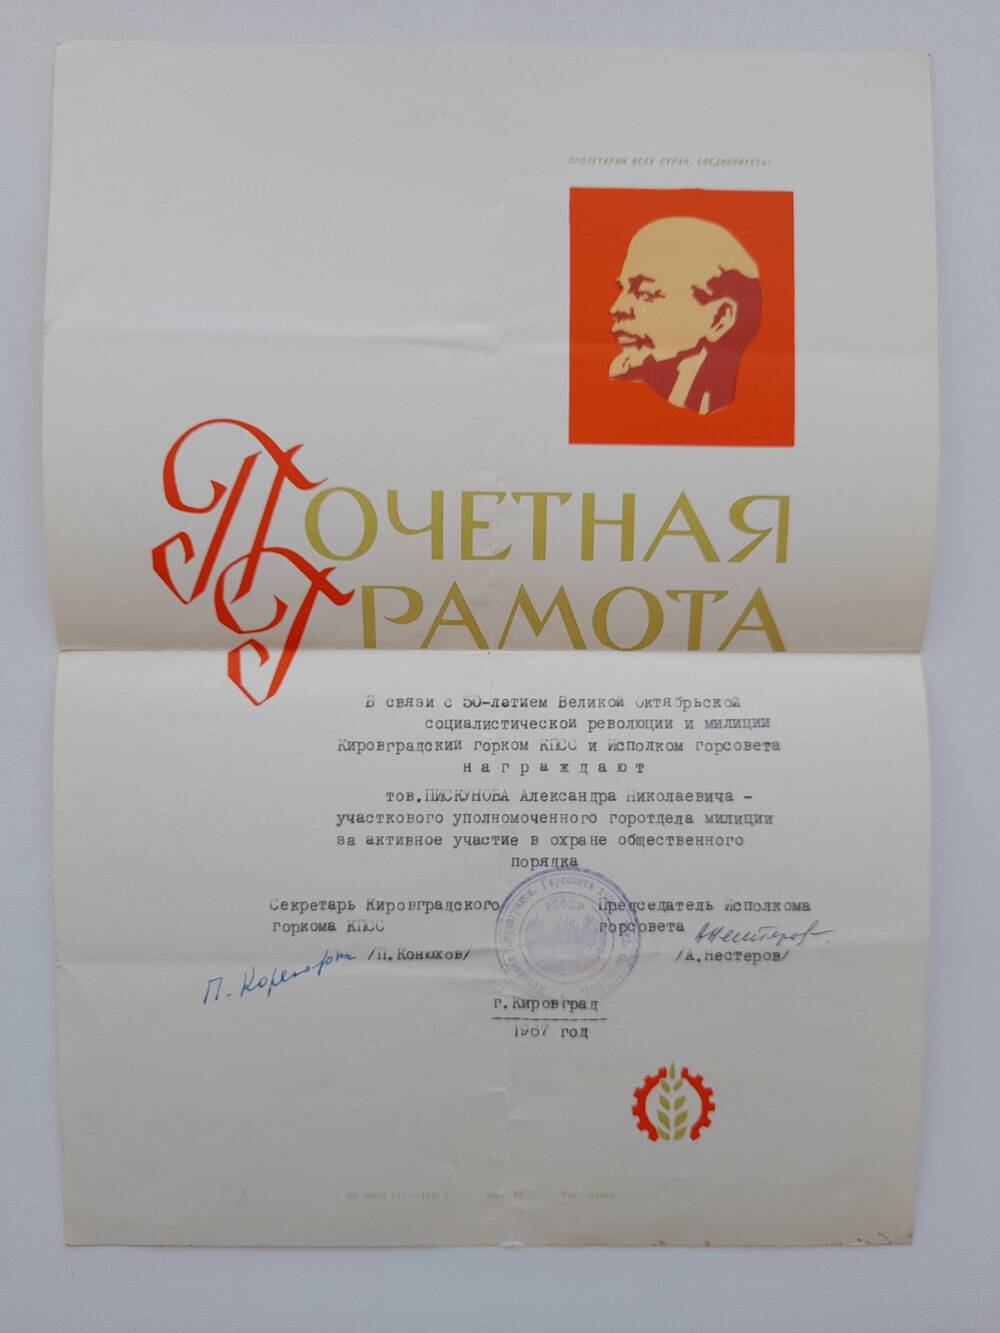 Грамота почетная Пискунова А.Н. в связи с 50-летием Октябрьской революции и милиции